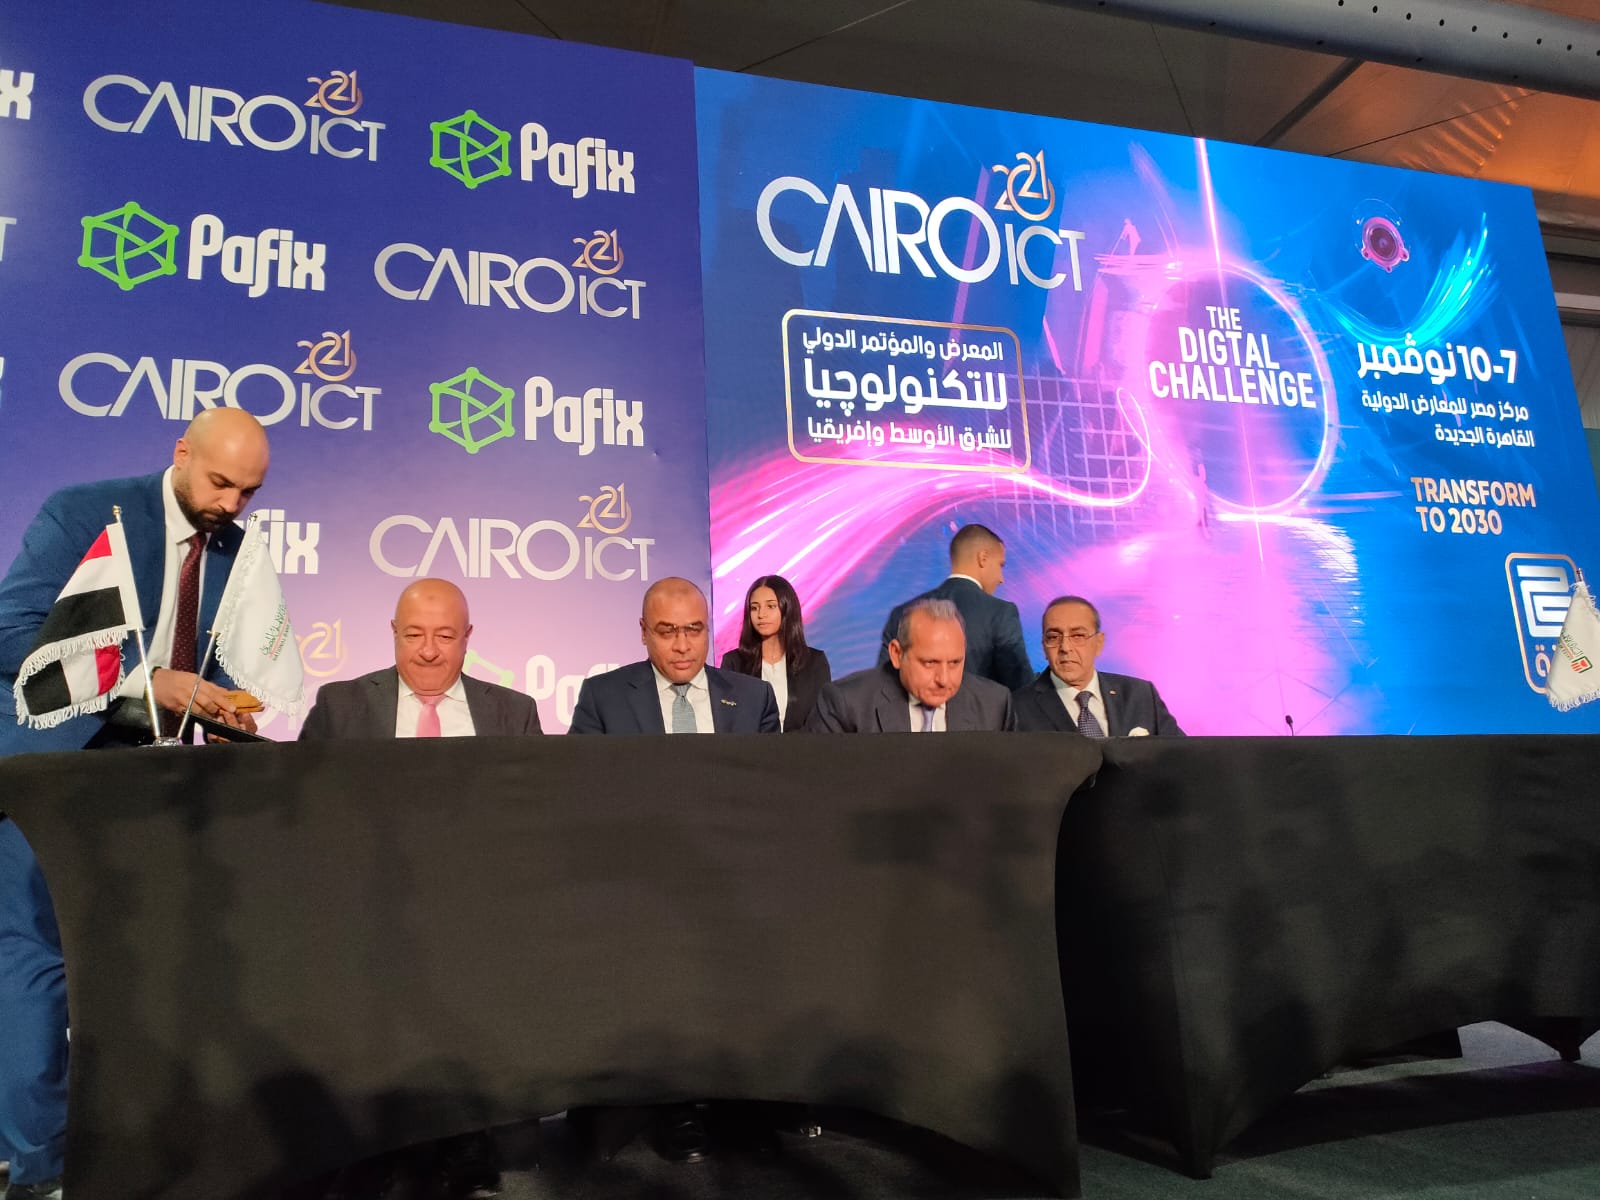 أبرزها أول بنك رقمي في مصر  اتفاقيات تعاون في أول أيام معرض القاهرة الدولي للتكنولوجيا والاتصالات